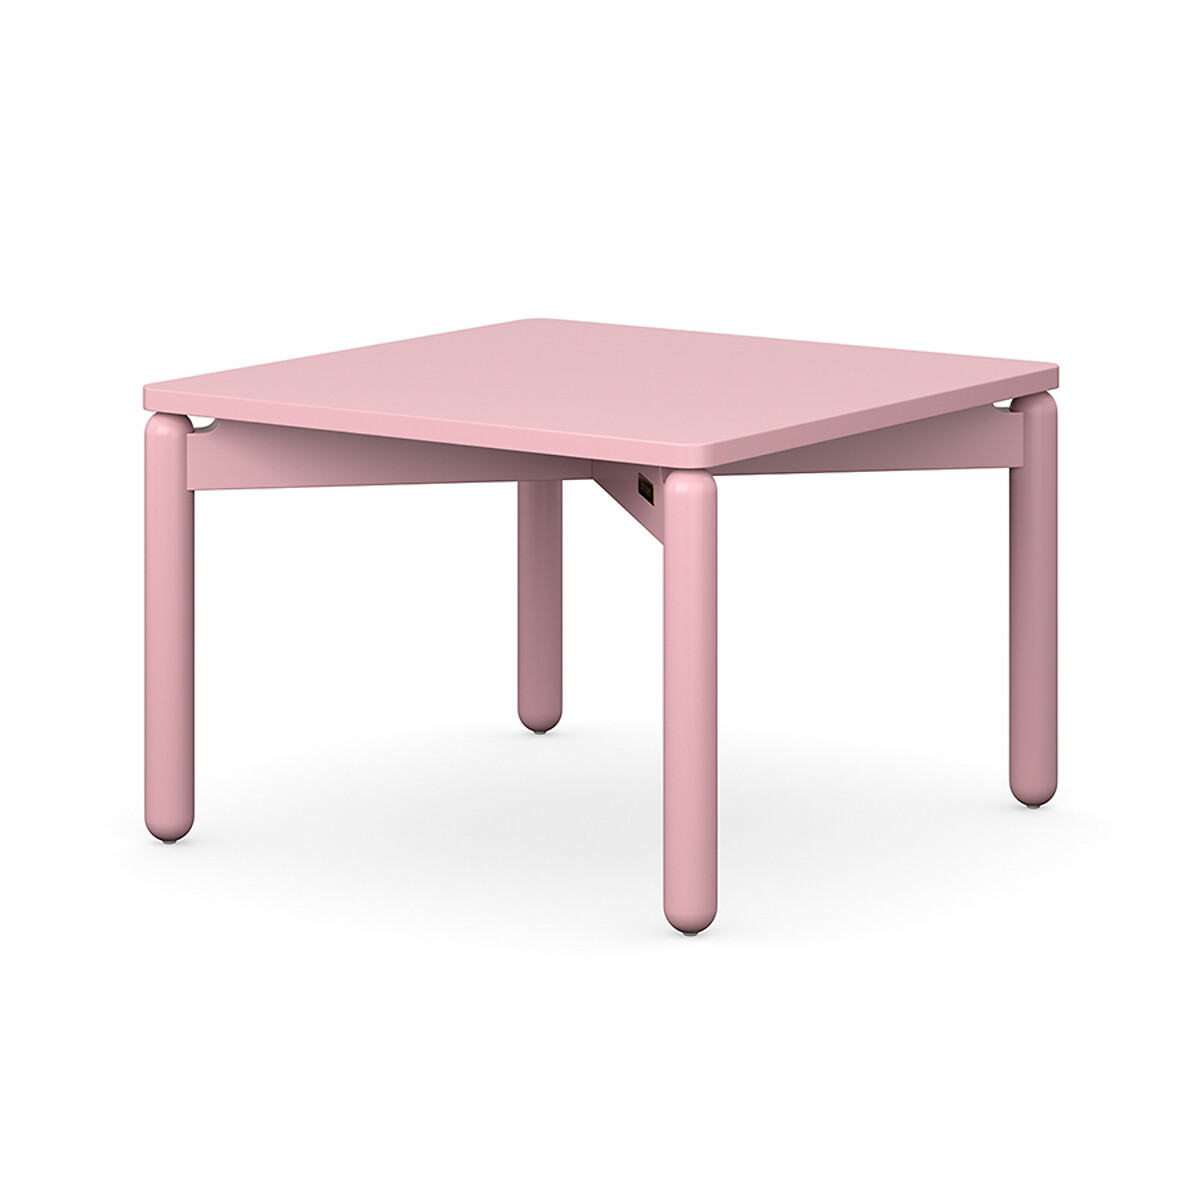 Столик кофейный Saga 60х60 см  2 персоны розовый LaRedoute, размер 2 персоны